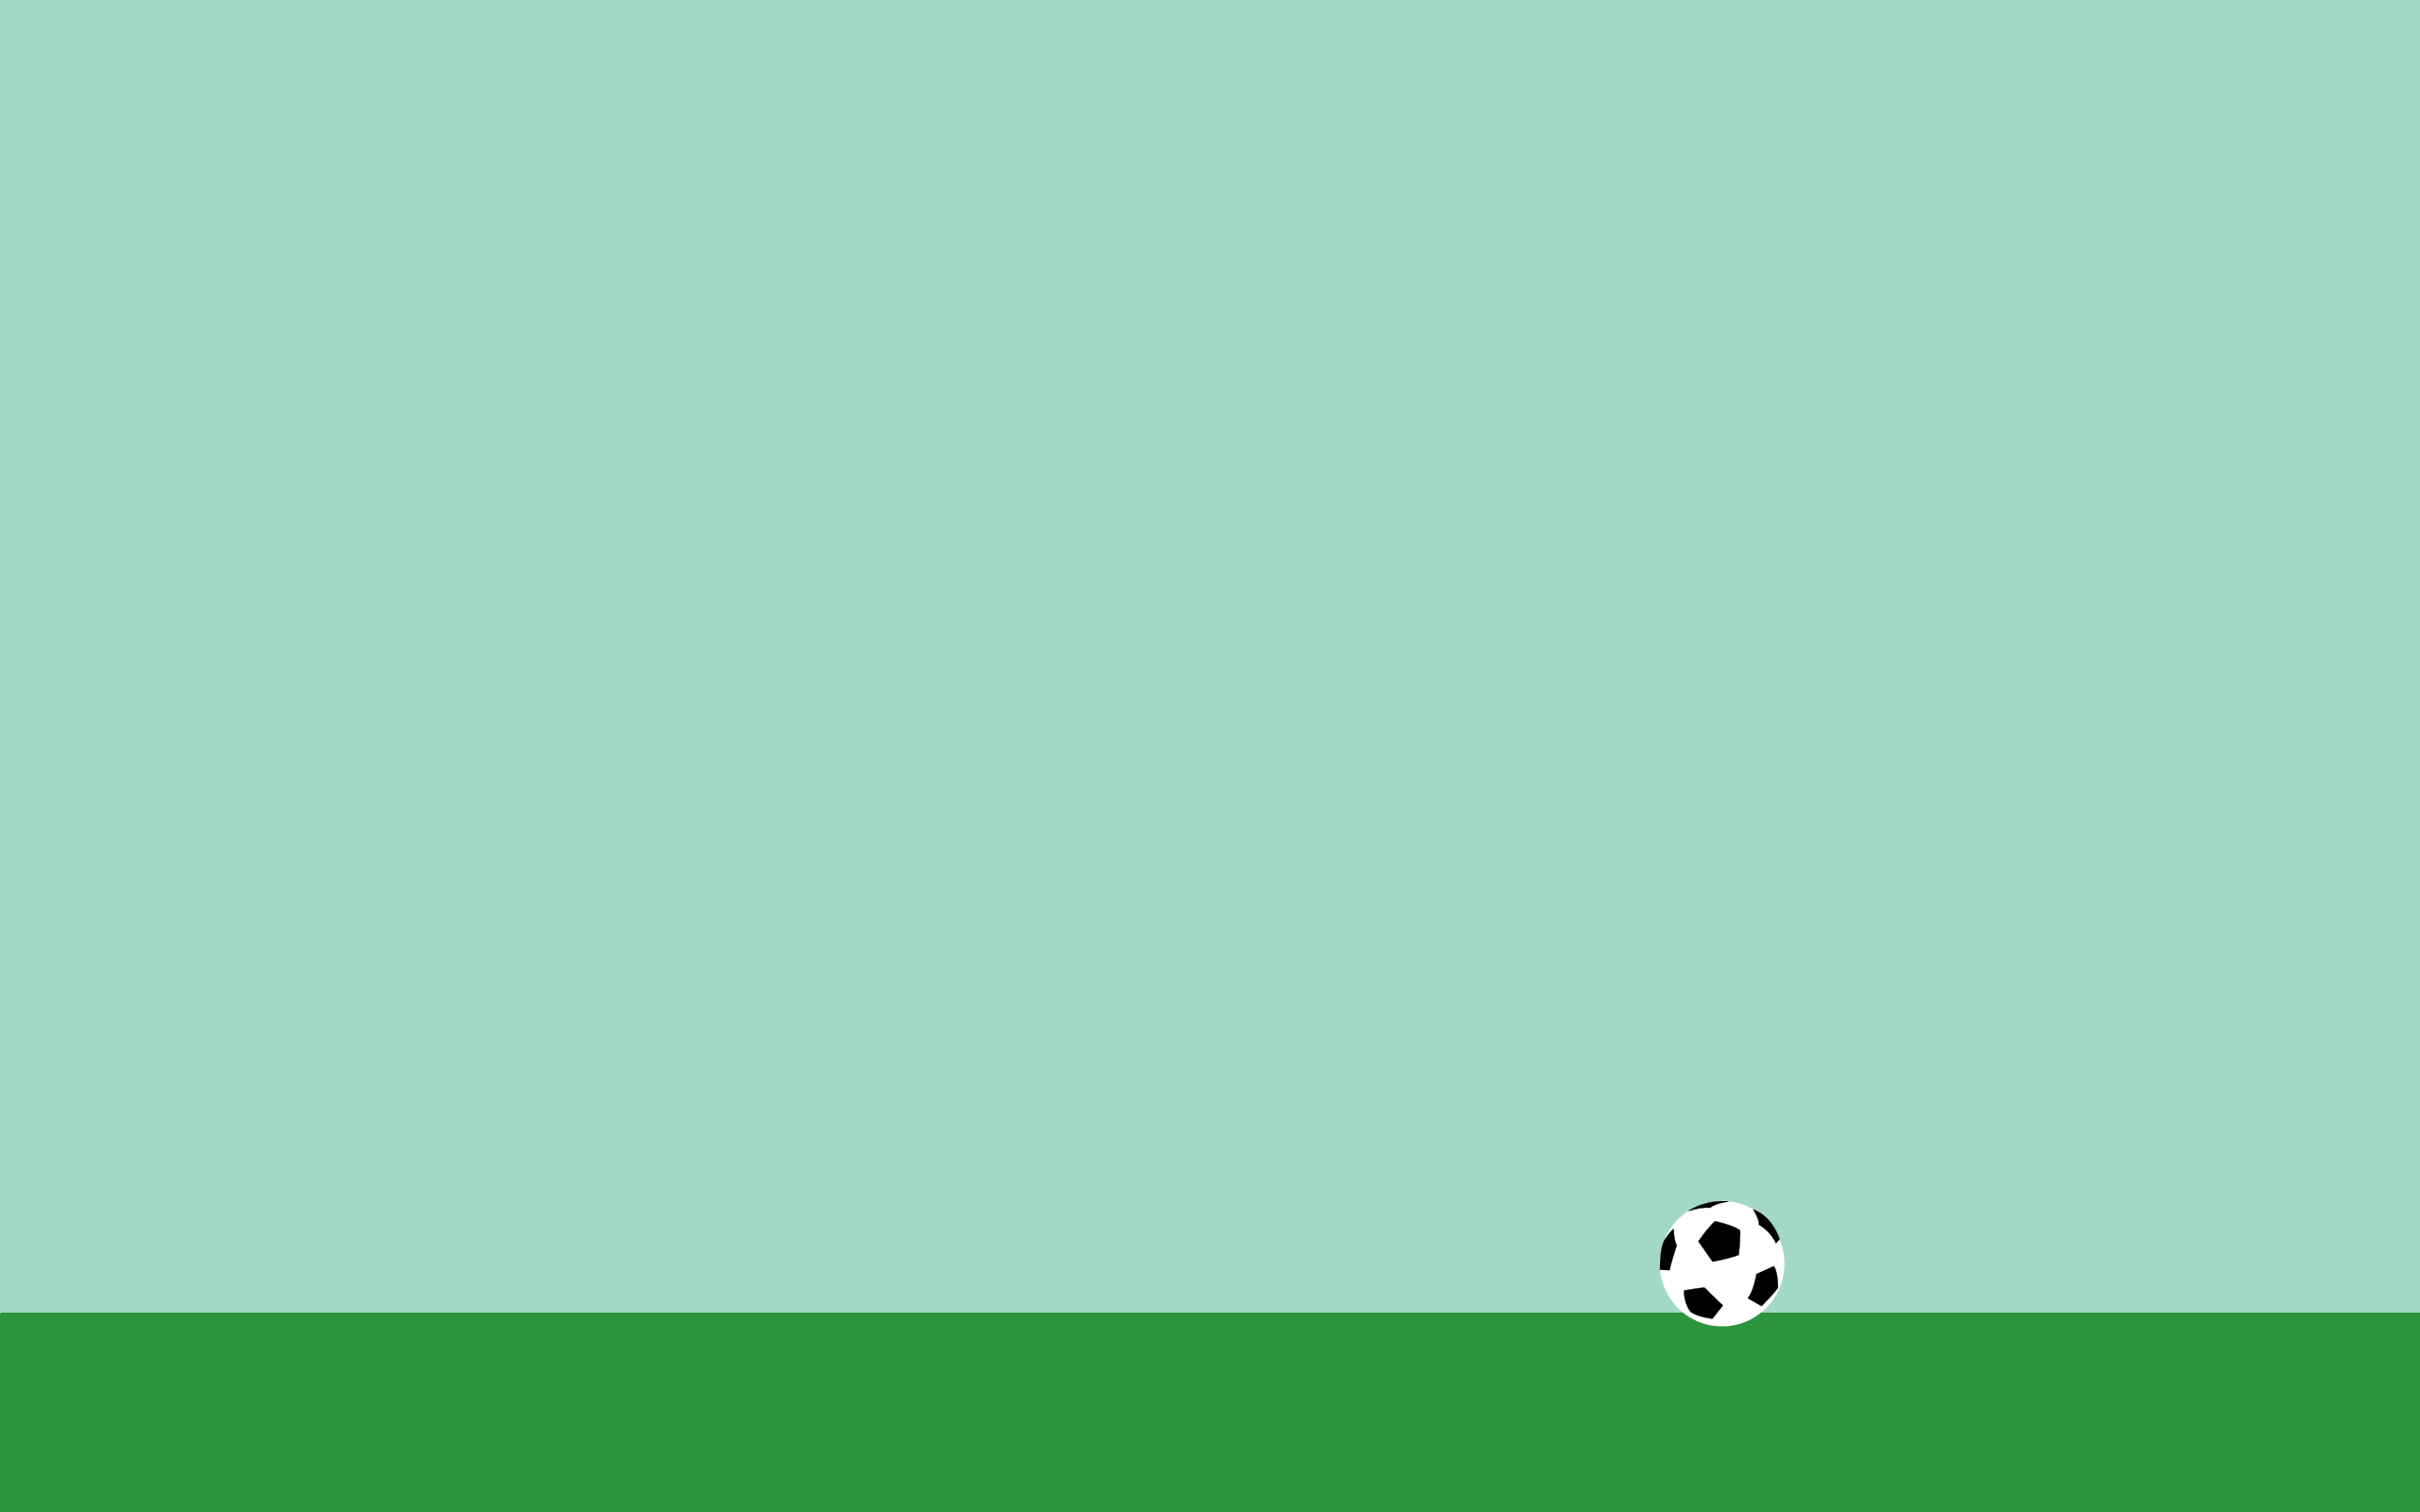 минимализм, футбольный мяч, голубой фон, обои, Minimalism, soccer ball, blue background, wallpaper